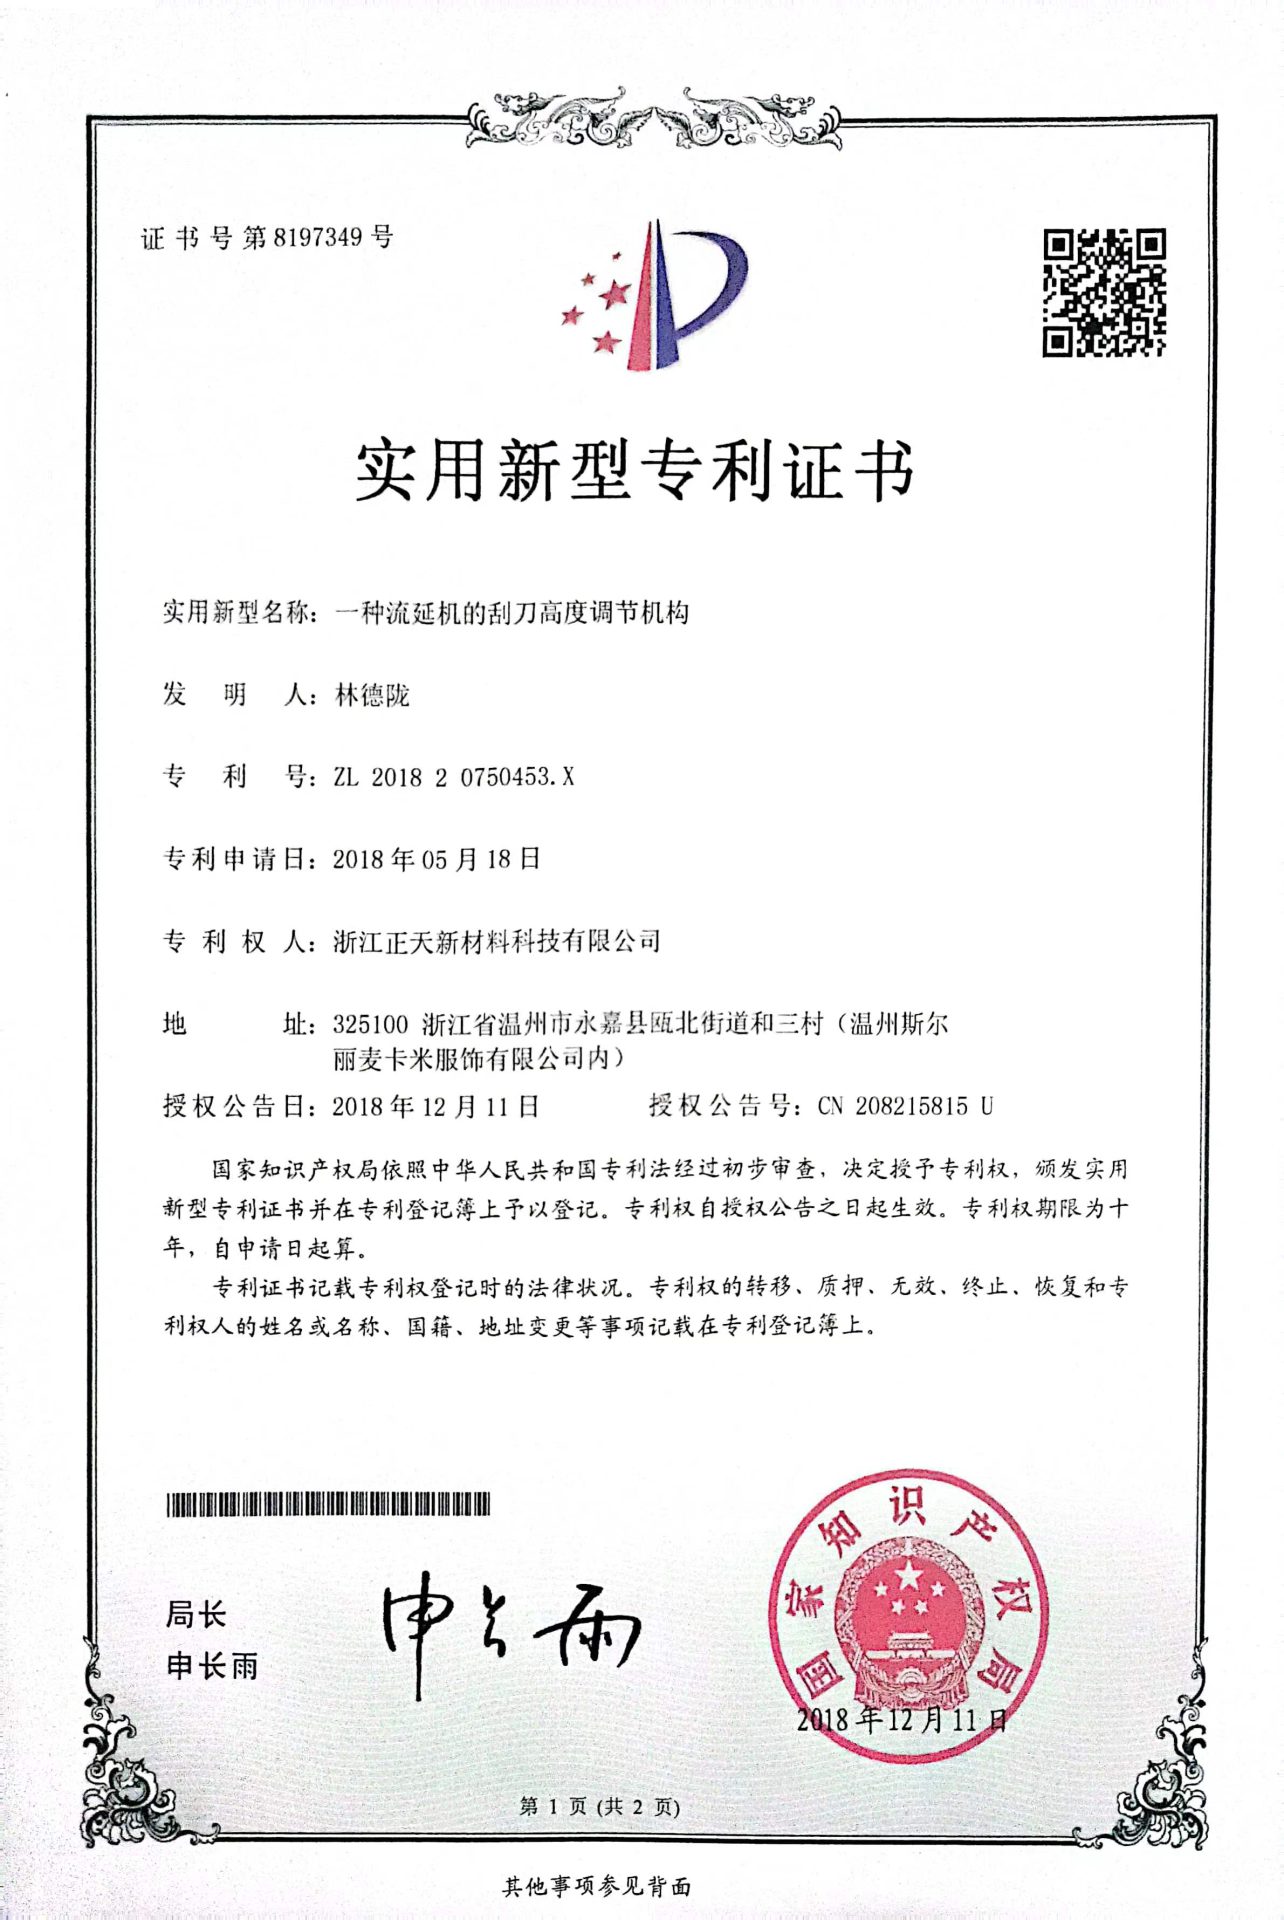 Zhengtian New Materials Technology Co., LTD. | Home